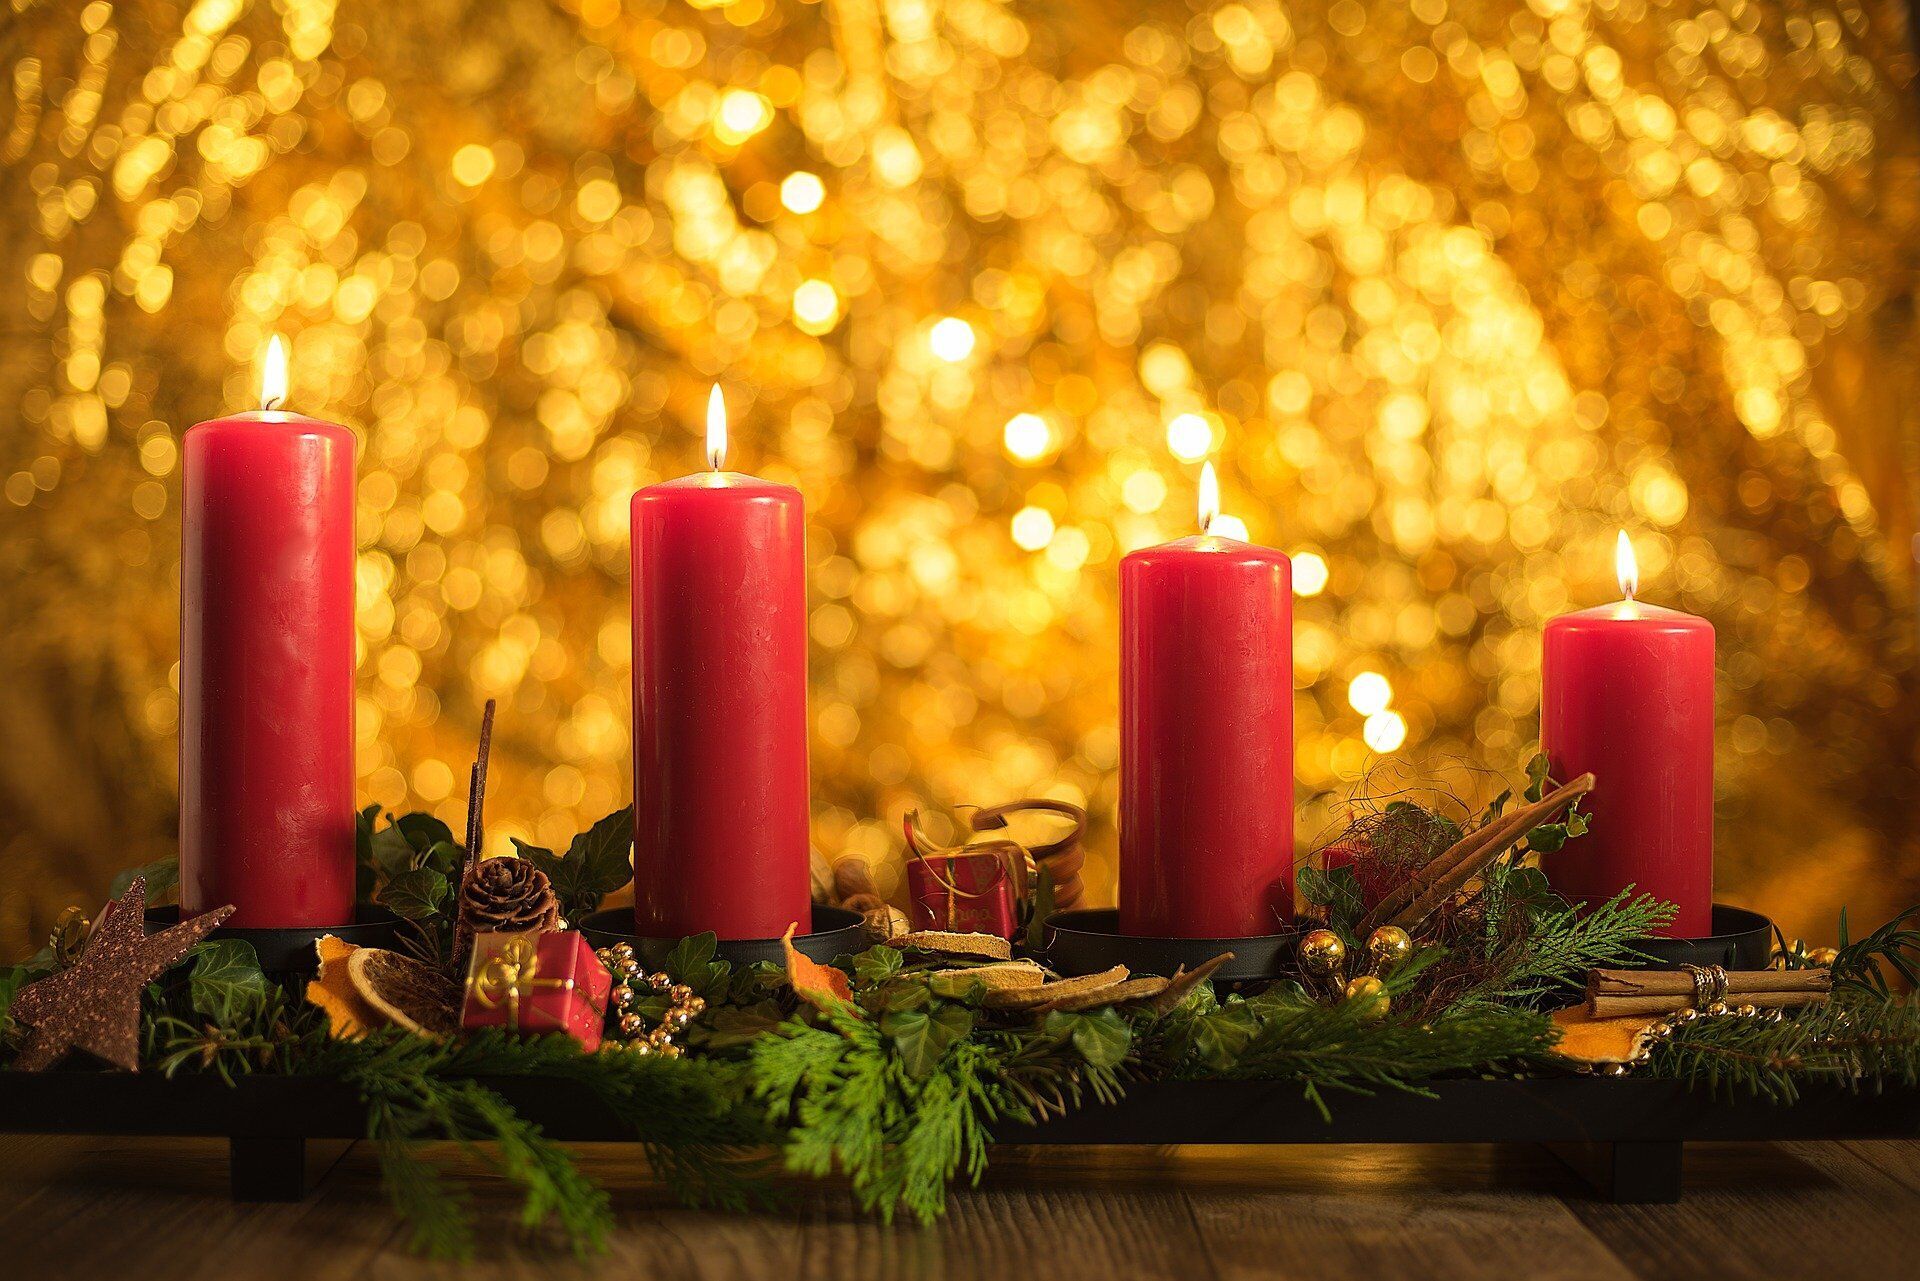 Адвентський вінок – один з головних атрибутів католицького Різдвяного посту